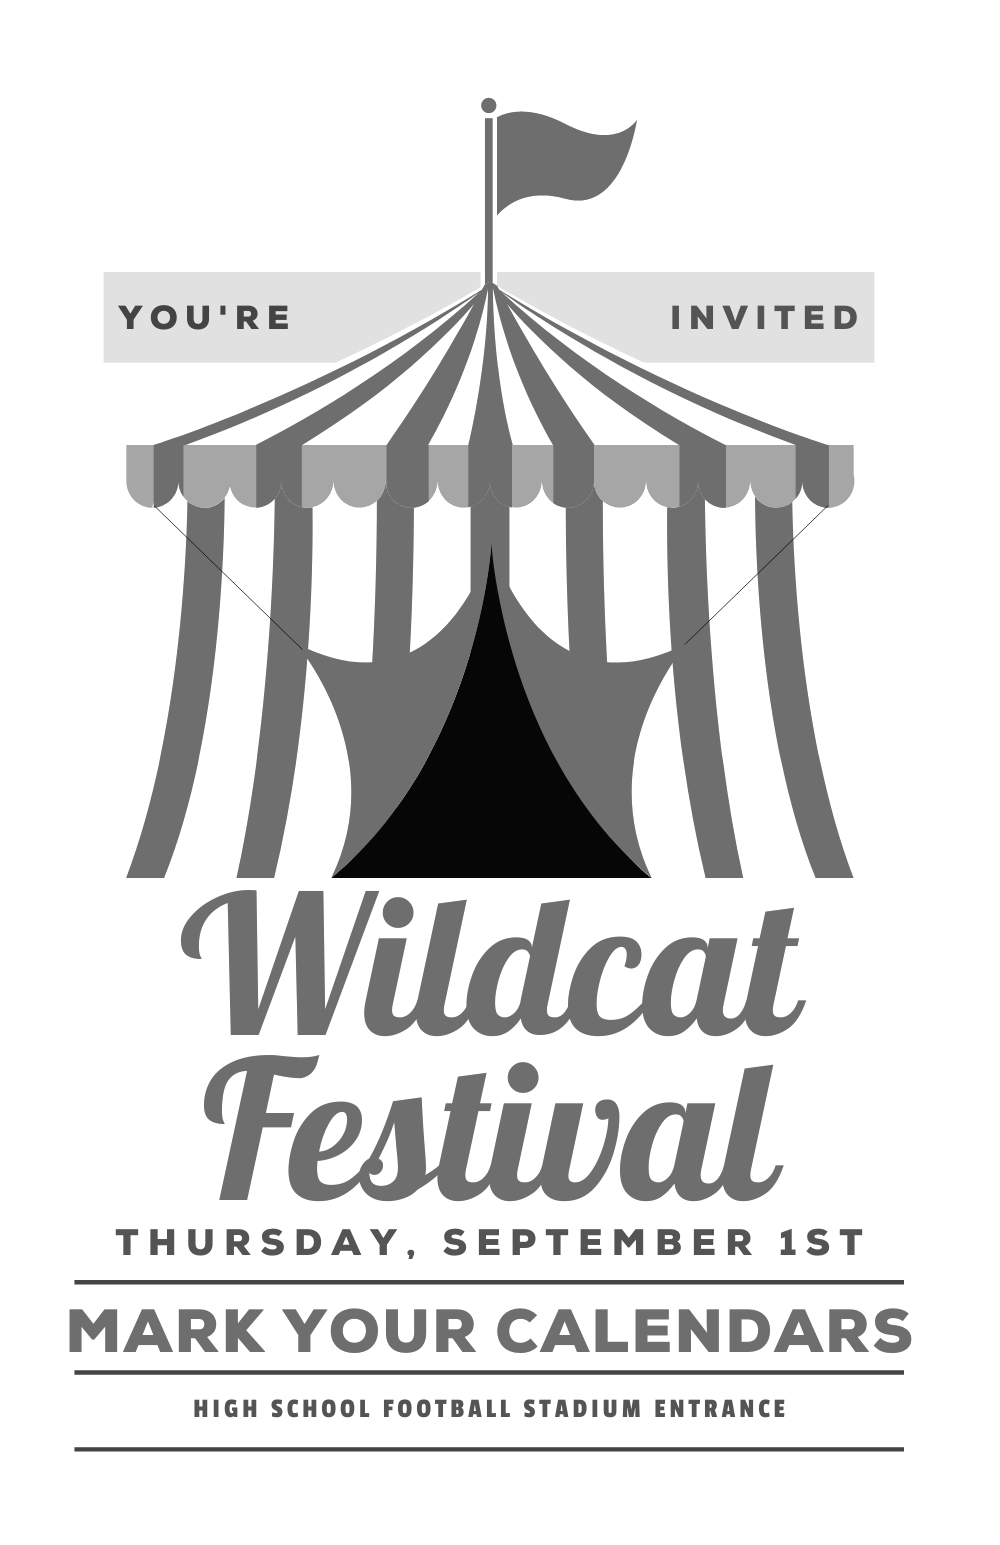 Wildcat festival flyer